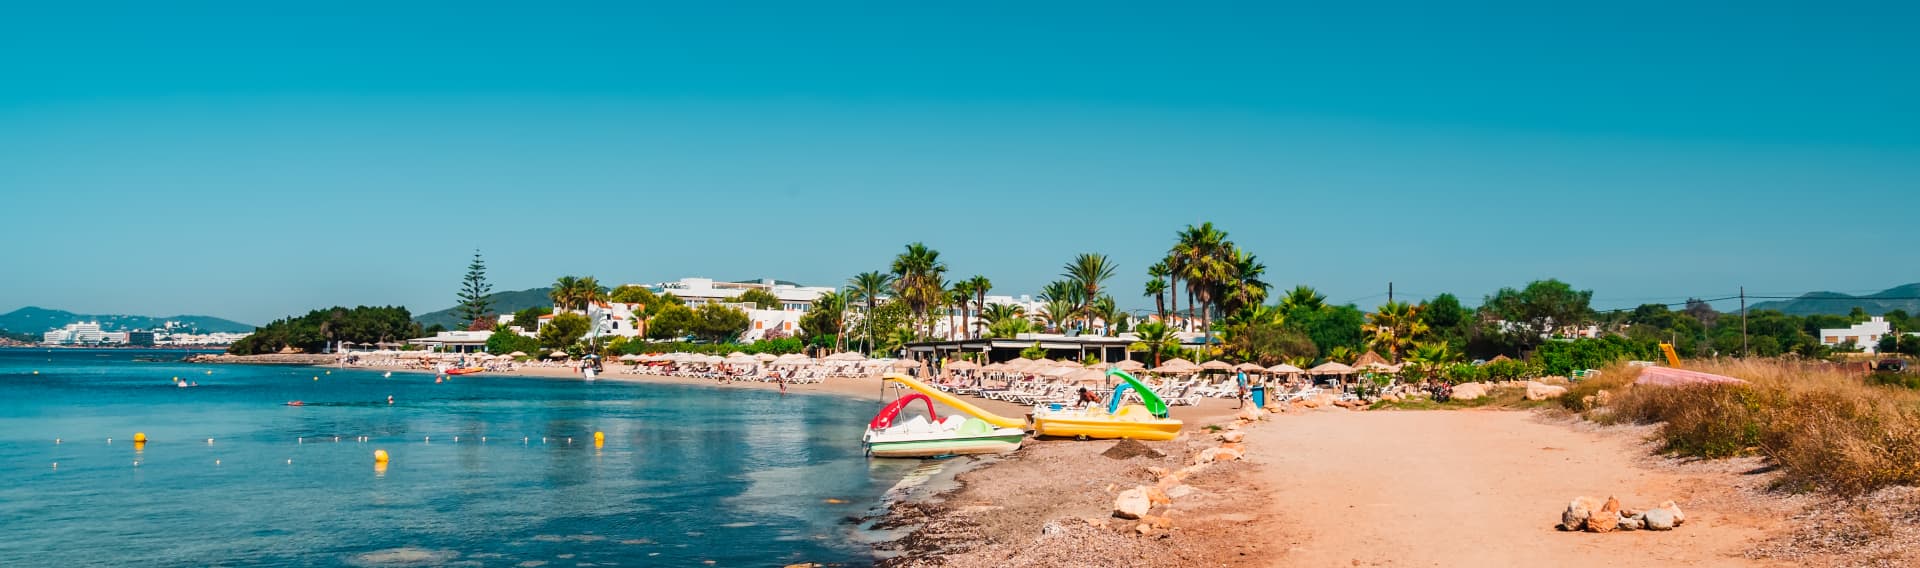 Ibiza Tipps: Sightseeing, Nachtleben & Strände